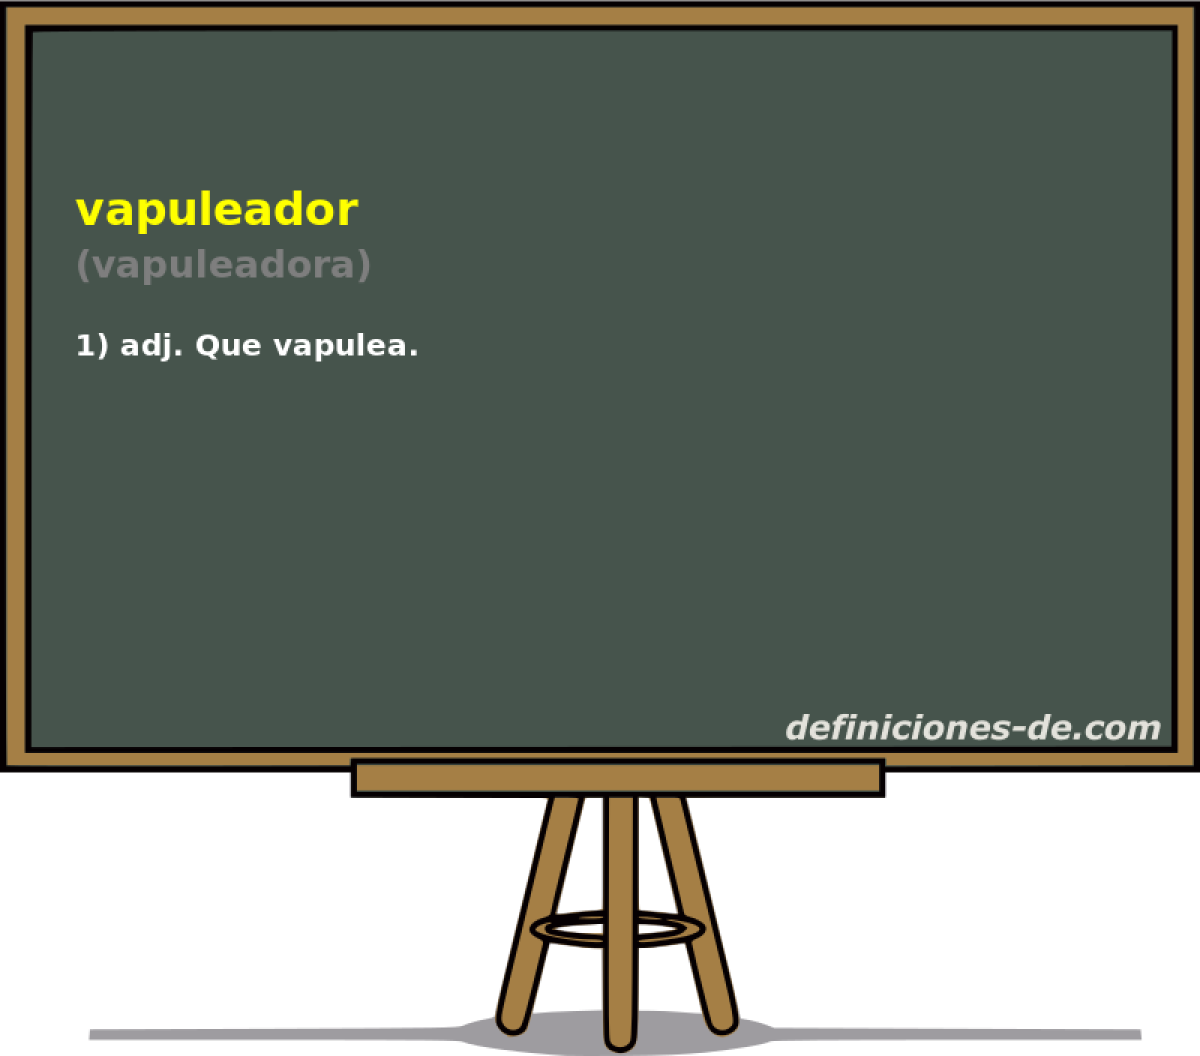 vapuleador (vapuleadora)